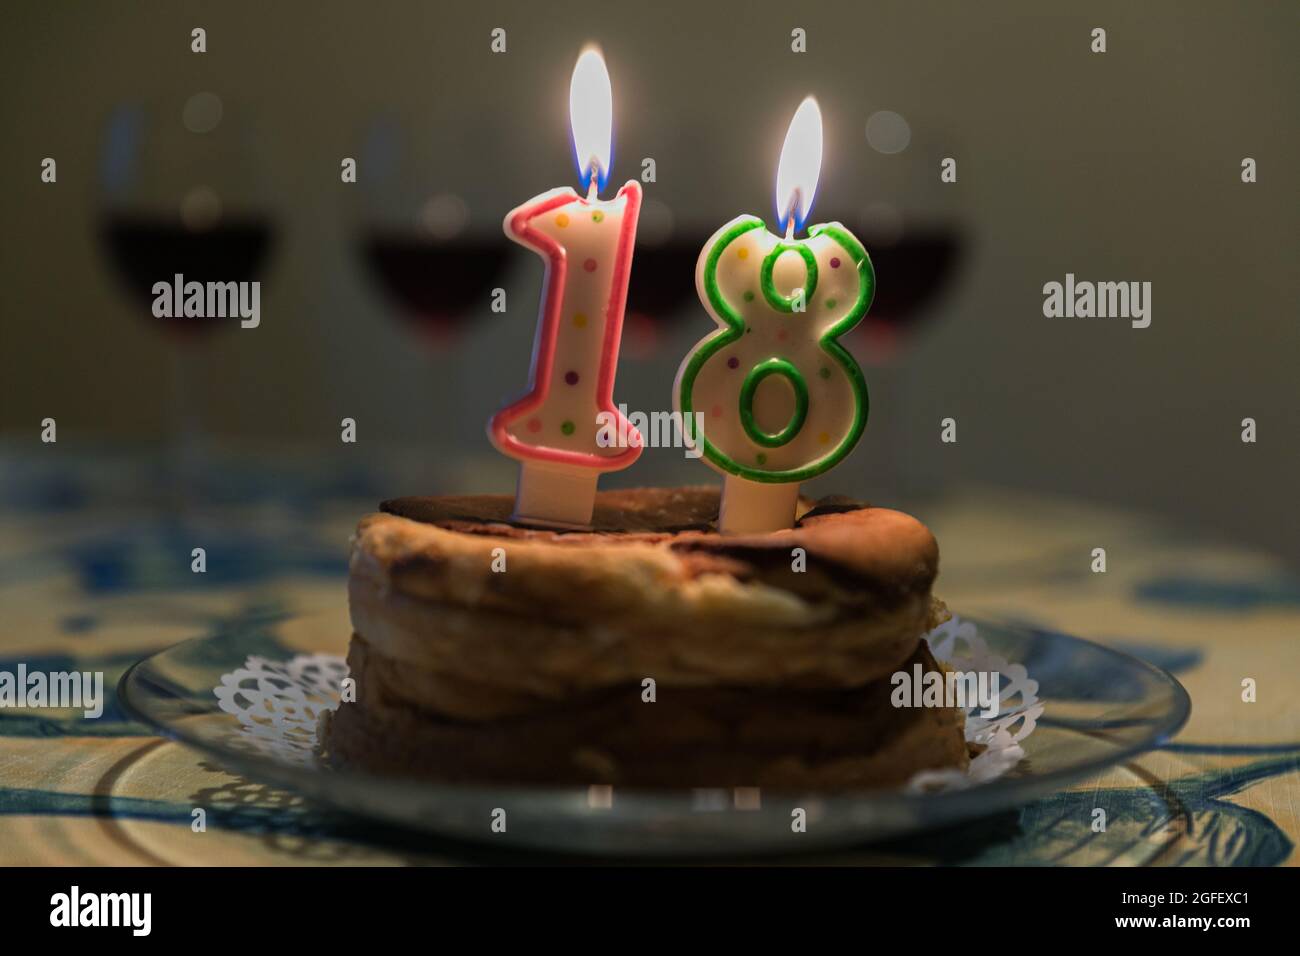 18 cumpleaños fotografías e imágenes de alta resolución - Página 2 - Alamy